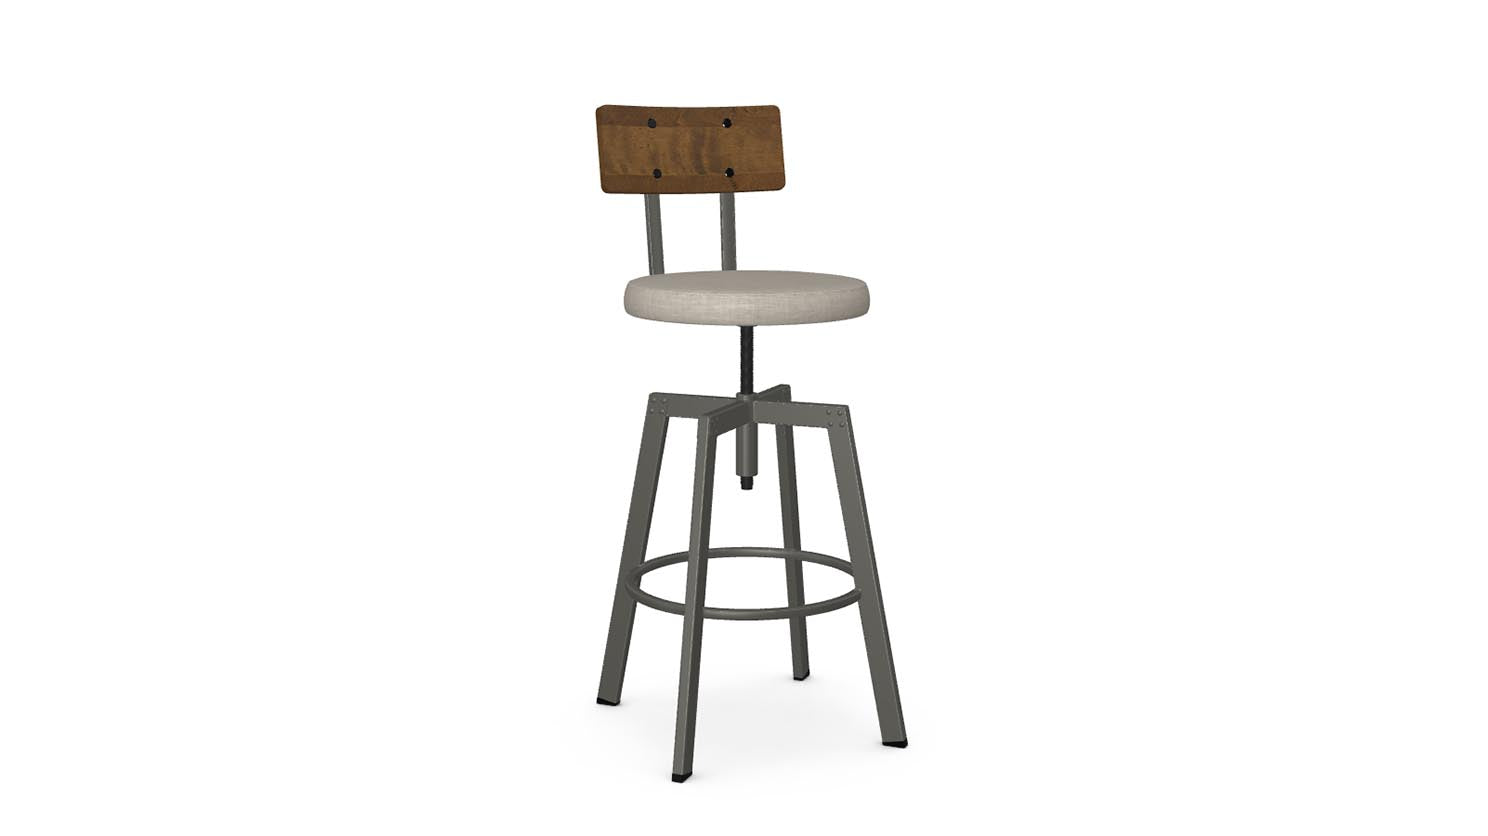 architect screw stool (cushion seat/wood back)